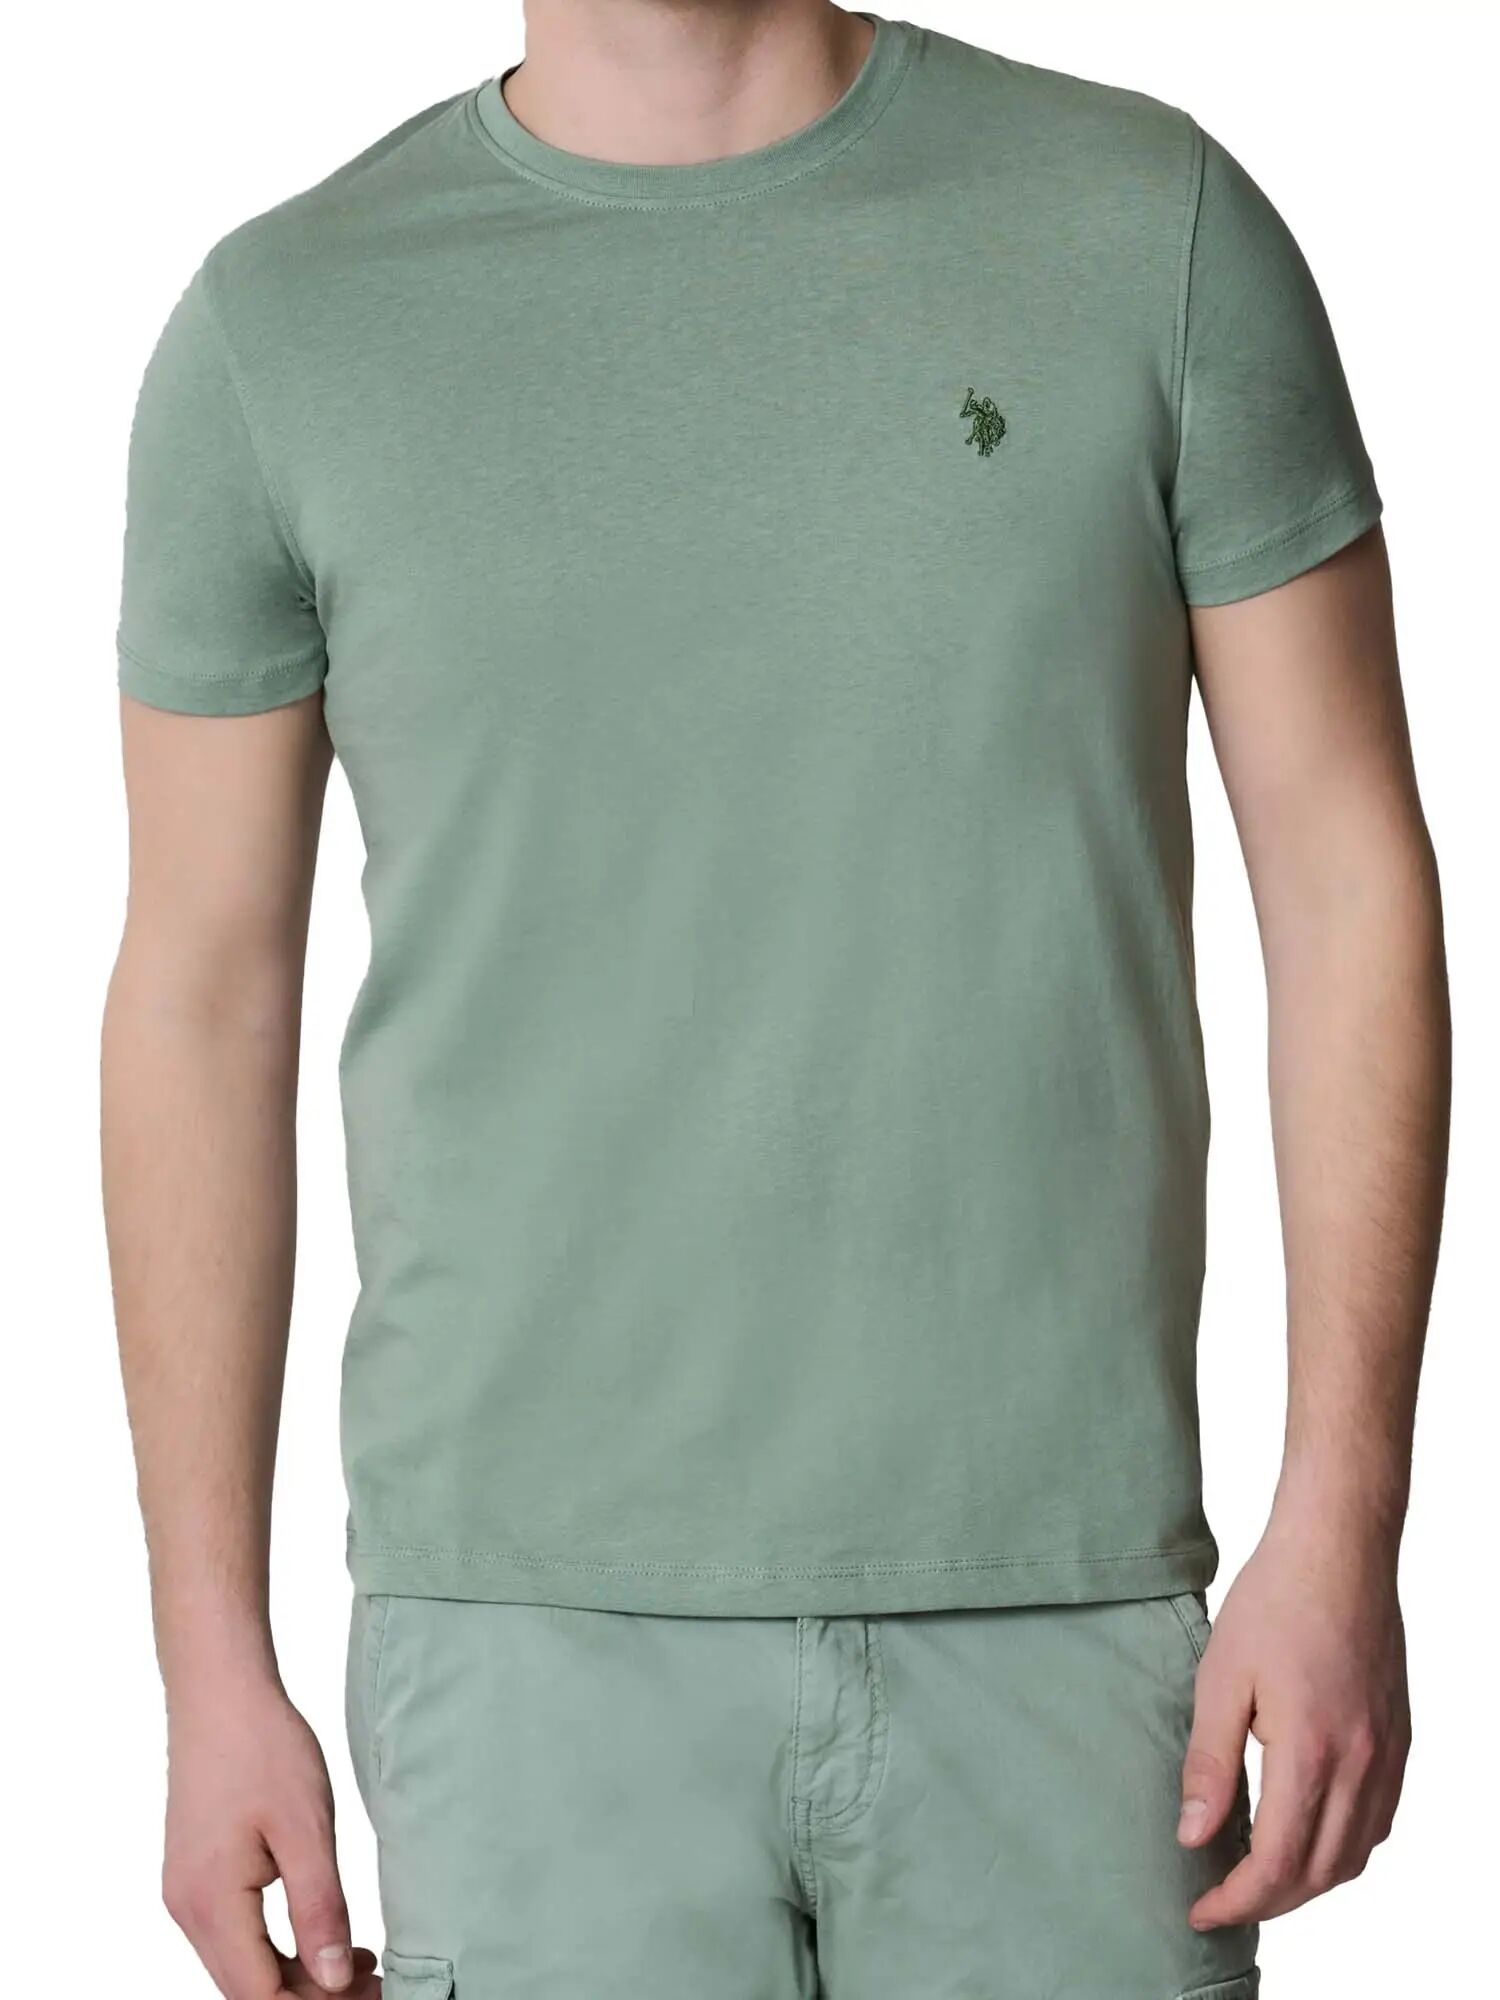 Us Polo Assn. T-shirt Uomo Colore Verde Chiaro VERDE CHIARO S